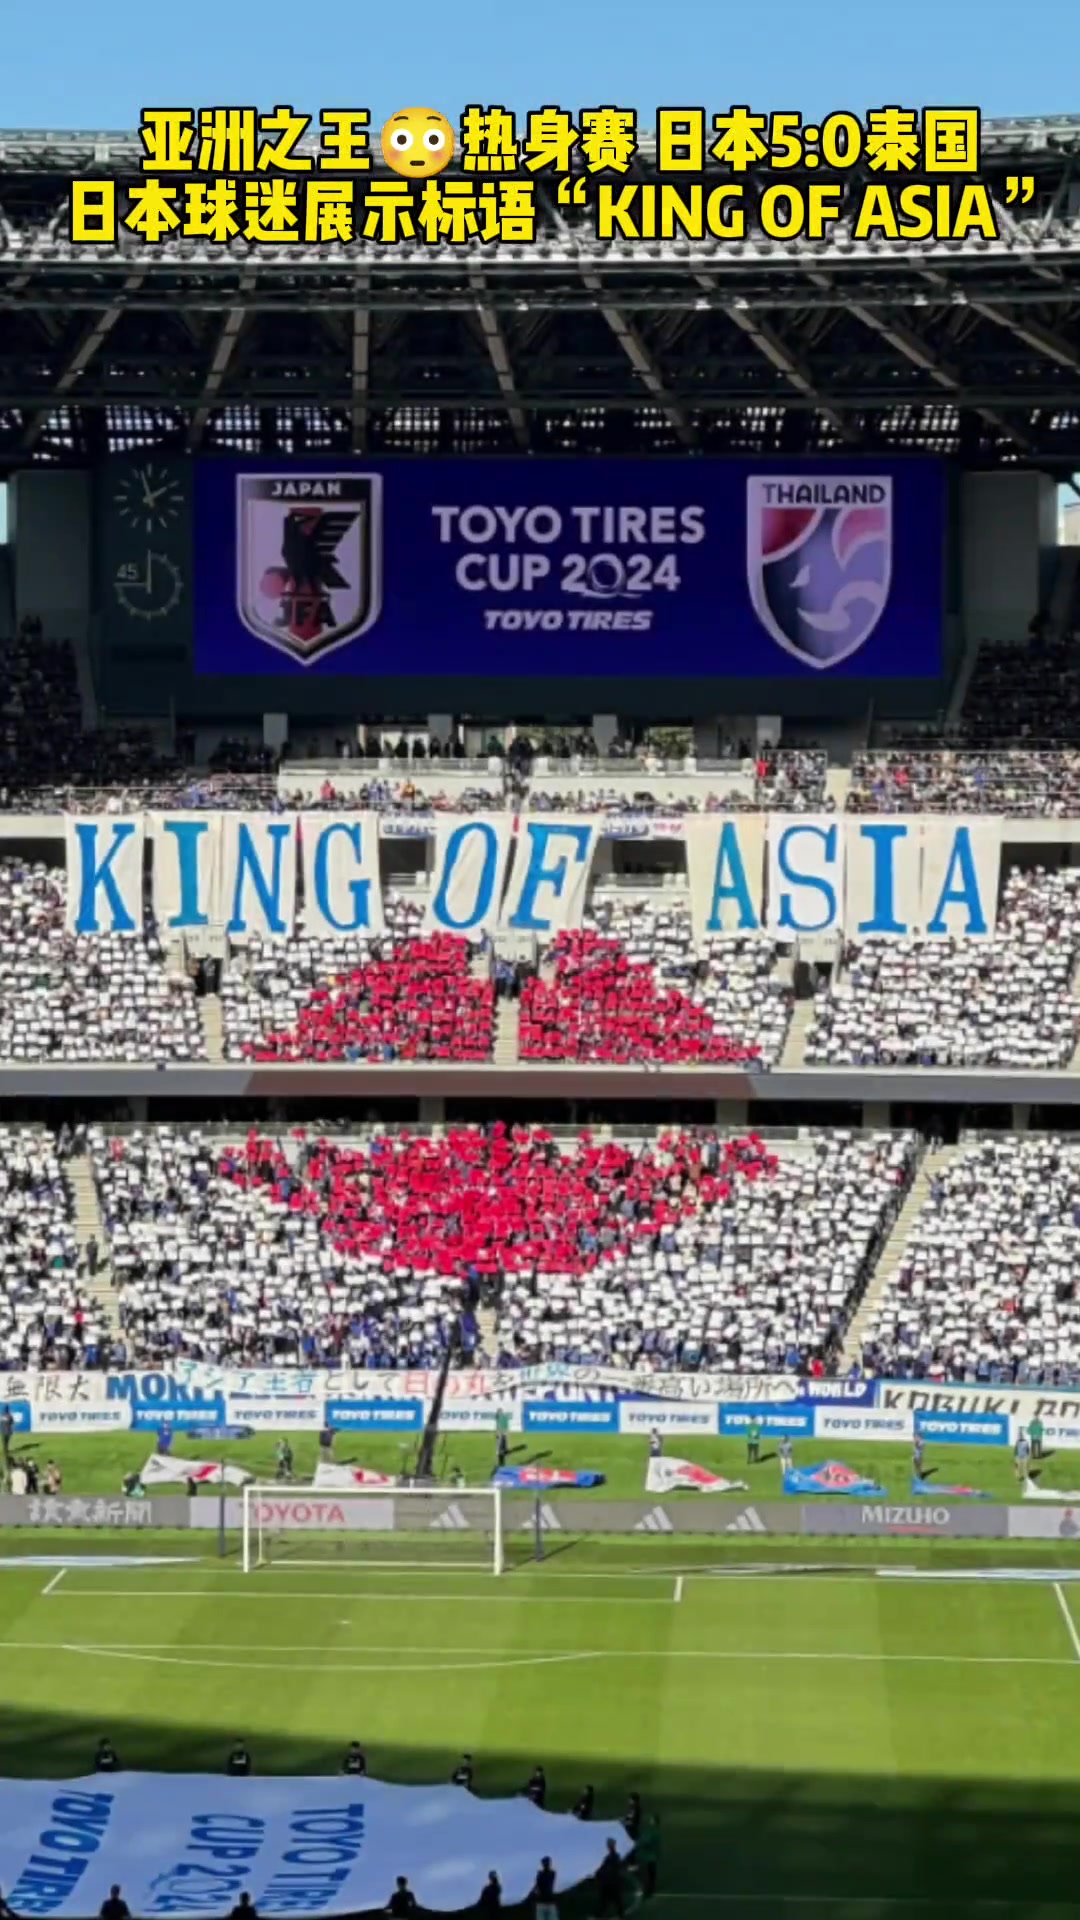 他们是有这个自信的！50泰国日本球迷展示标语：亚洲之王